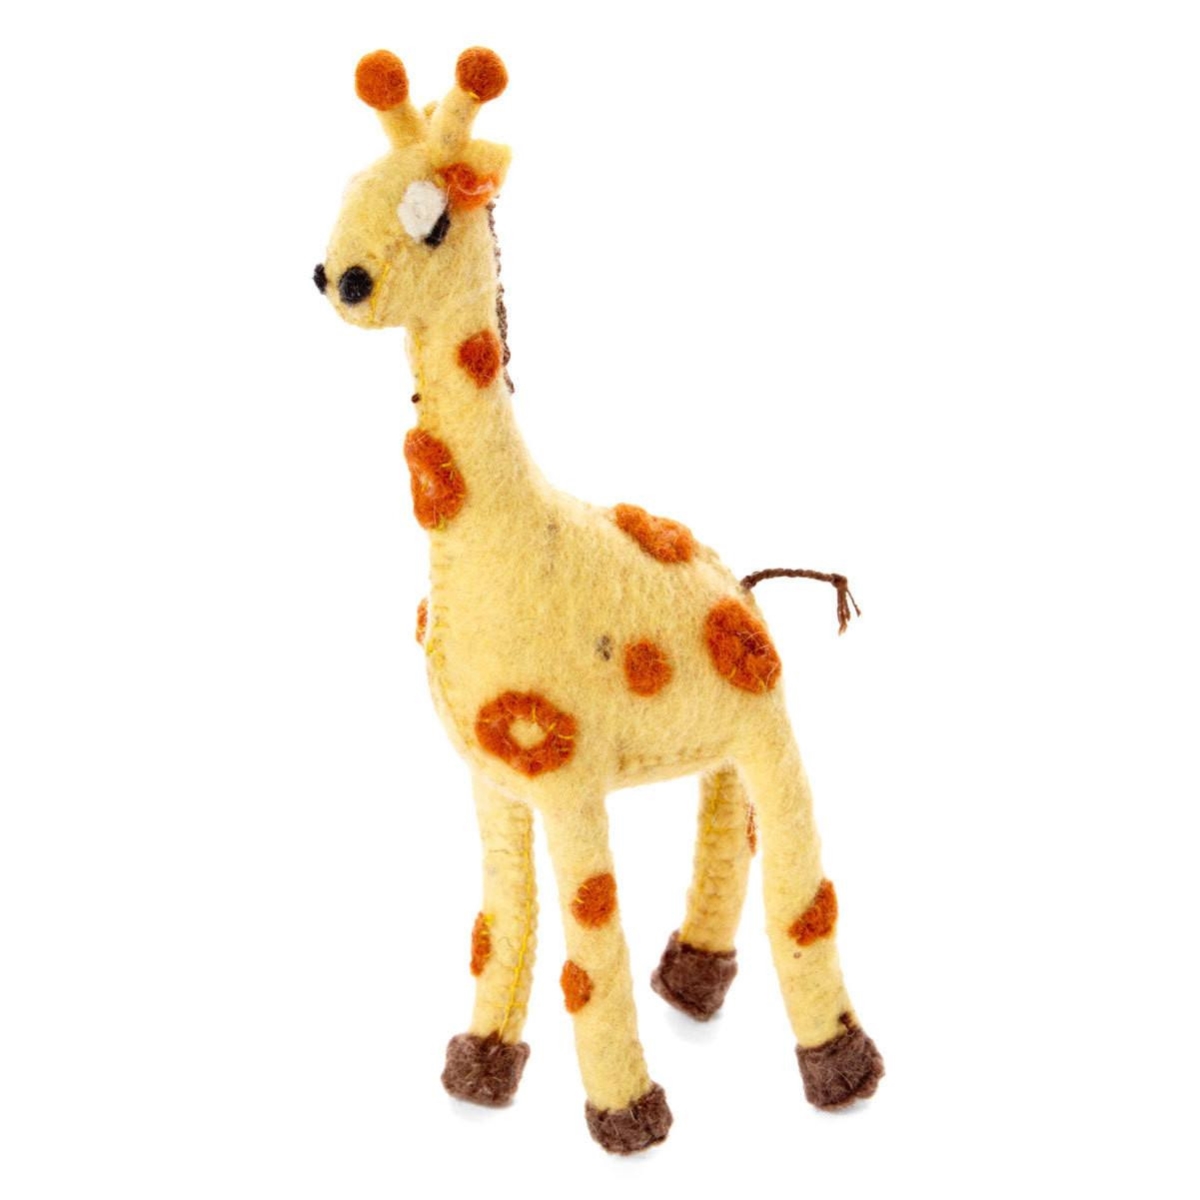 Sror52-564193 Giraffe Felt Holiday Ornament